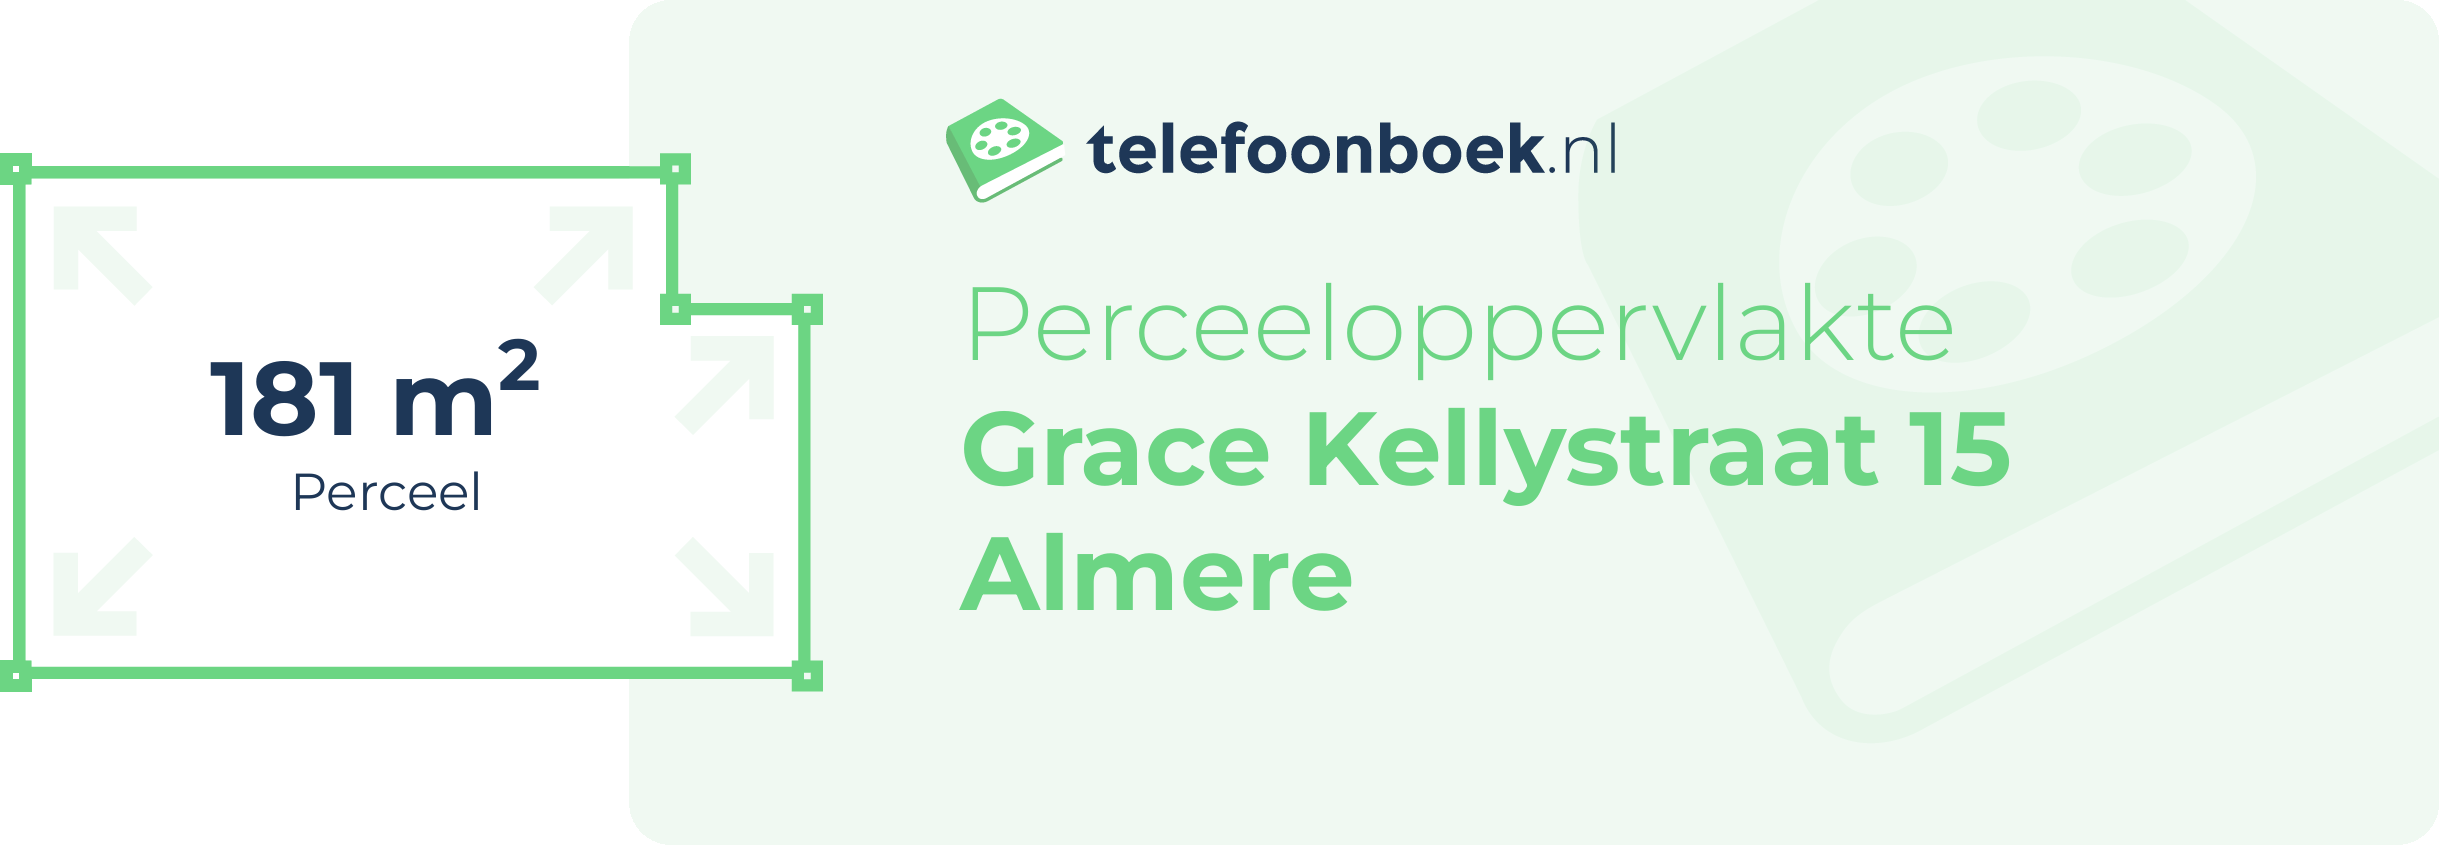 Perceeloppervlakte Grace Kellystraat 15 Almere